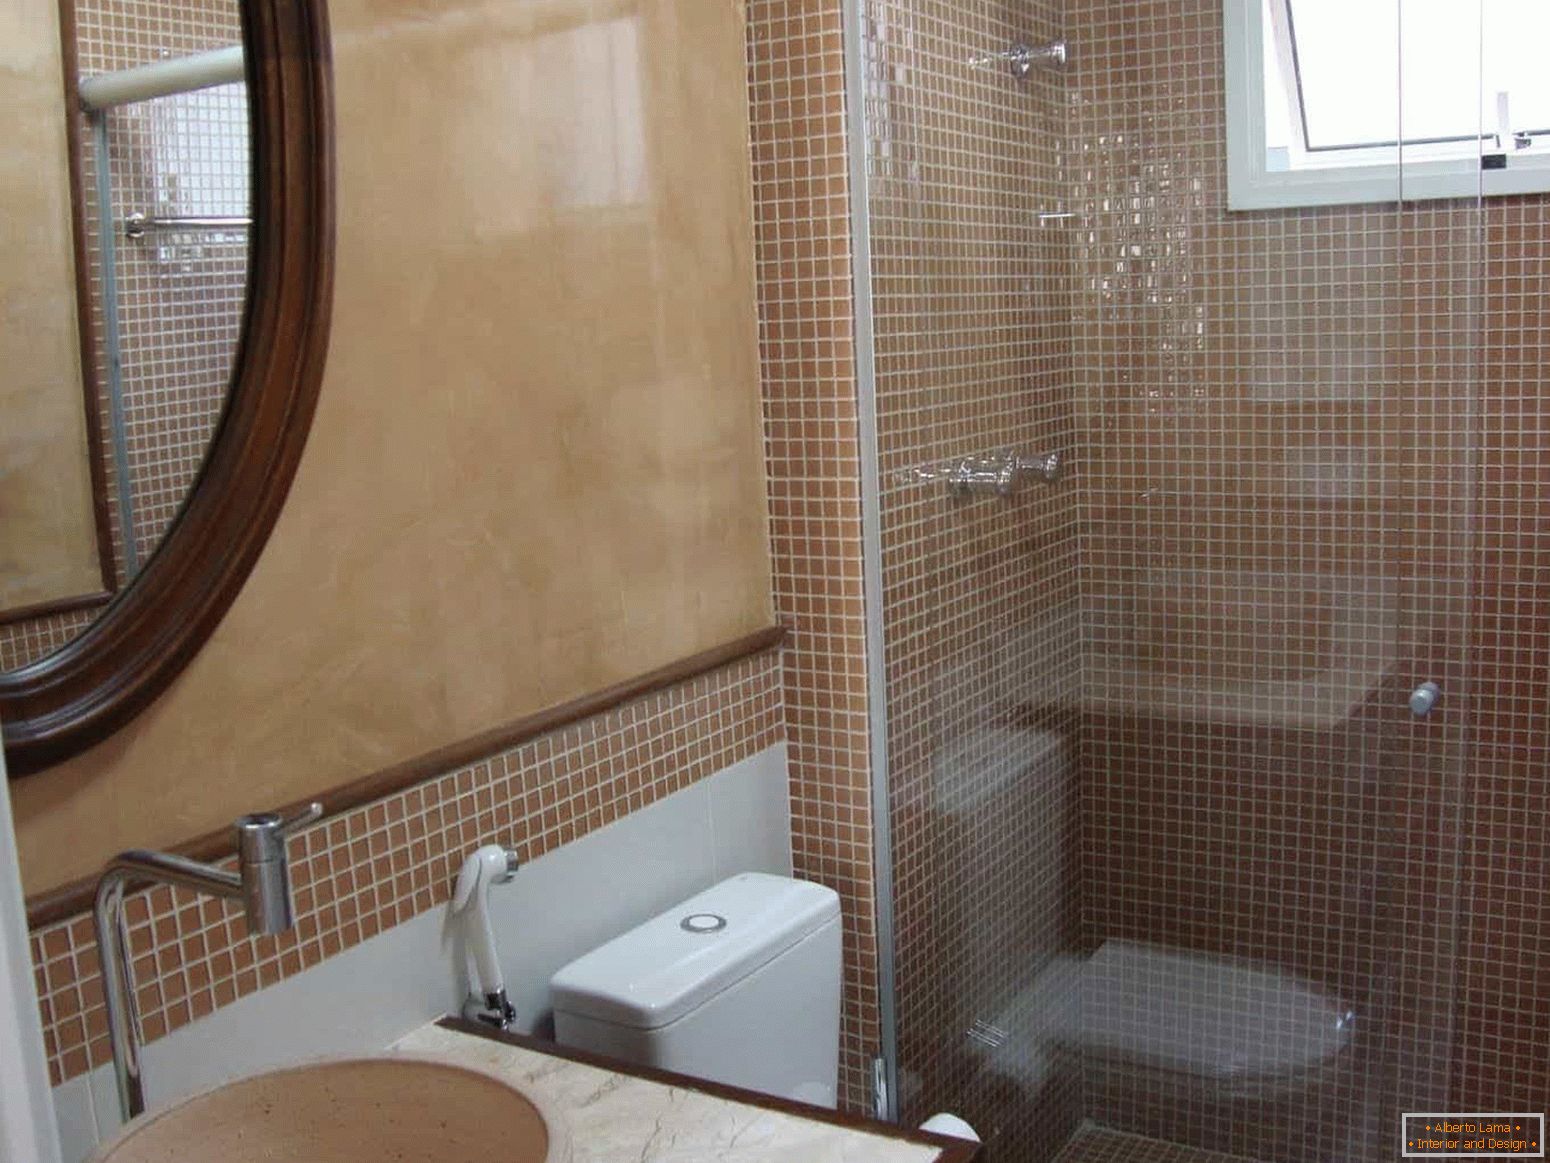 Mosaic je populární při dokončení koupelny v panelovém domě